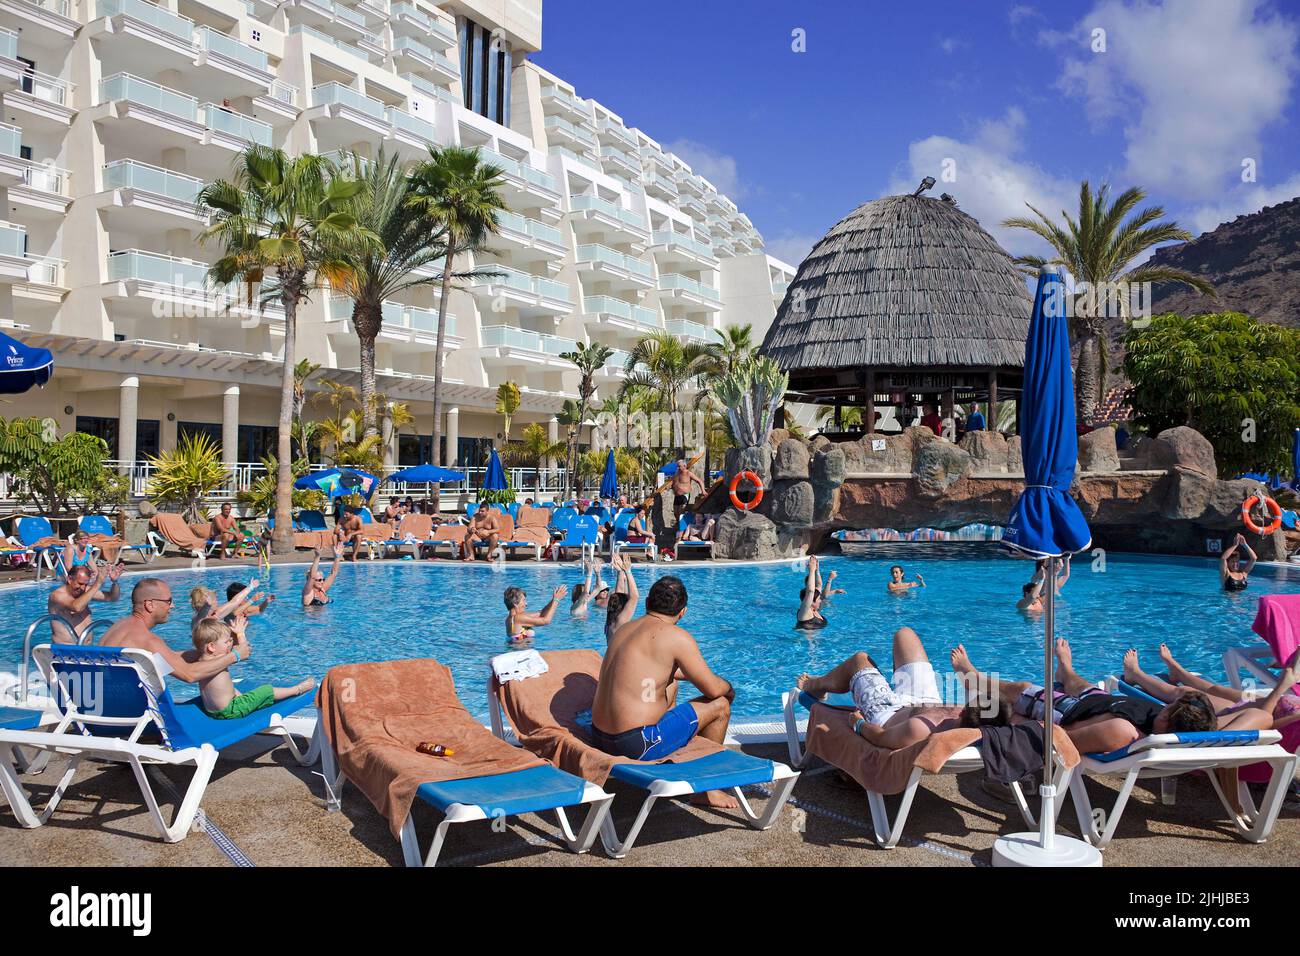 Animazione in piscina presso un hotel, Taurito, Grand Canary, Isole Canarie, Spagna, Europa Foto Stock